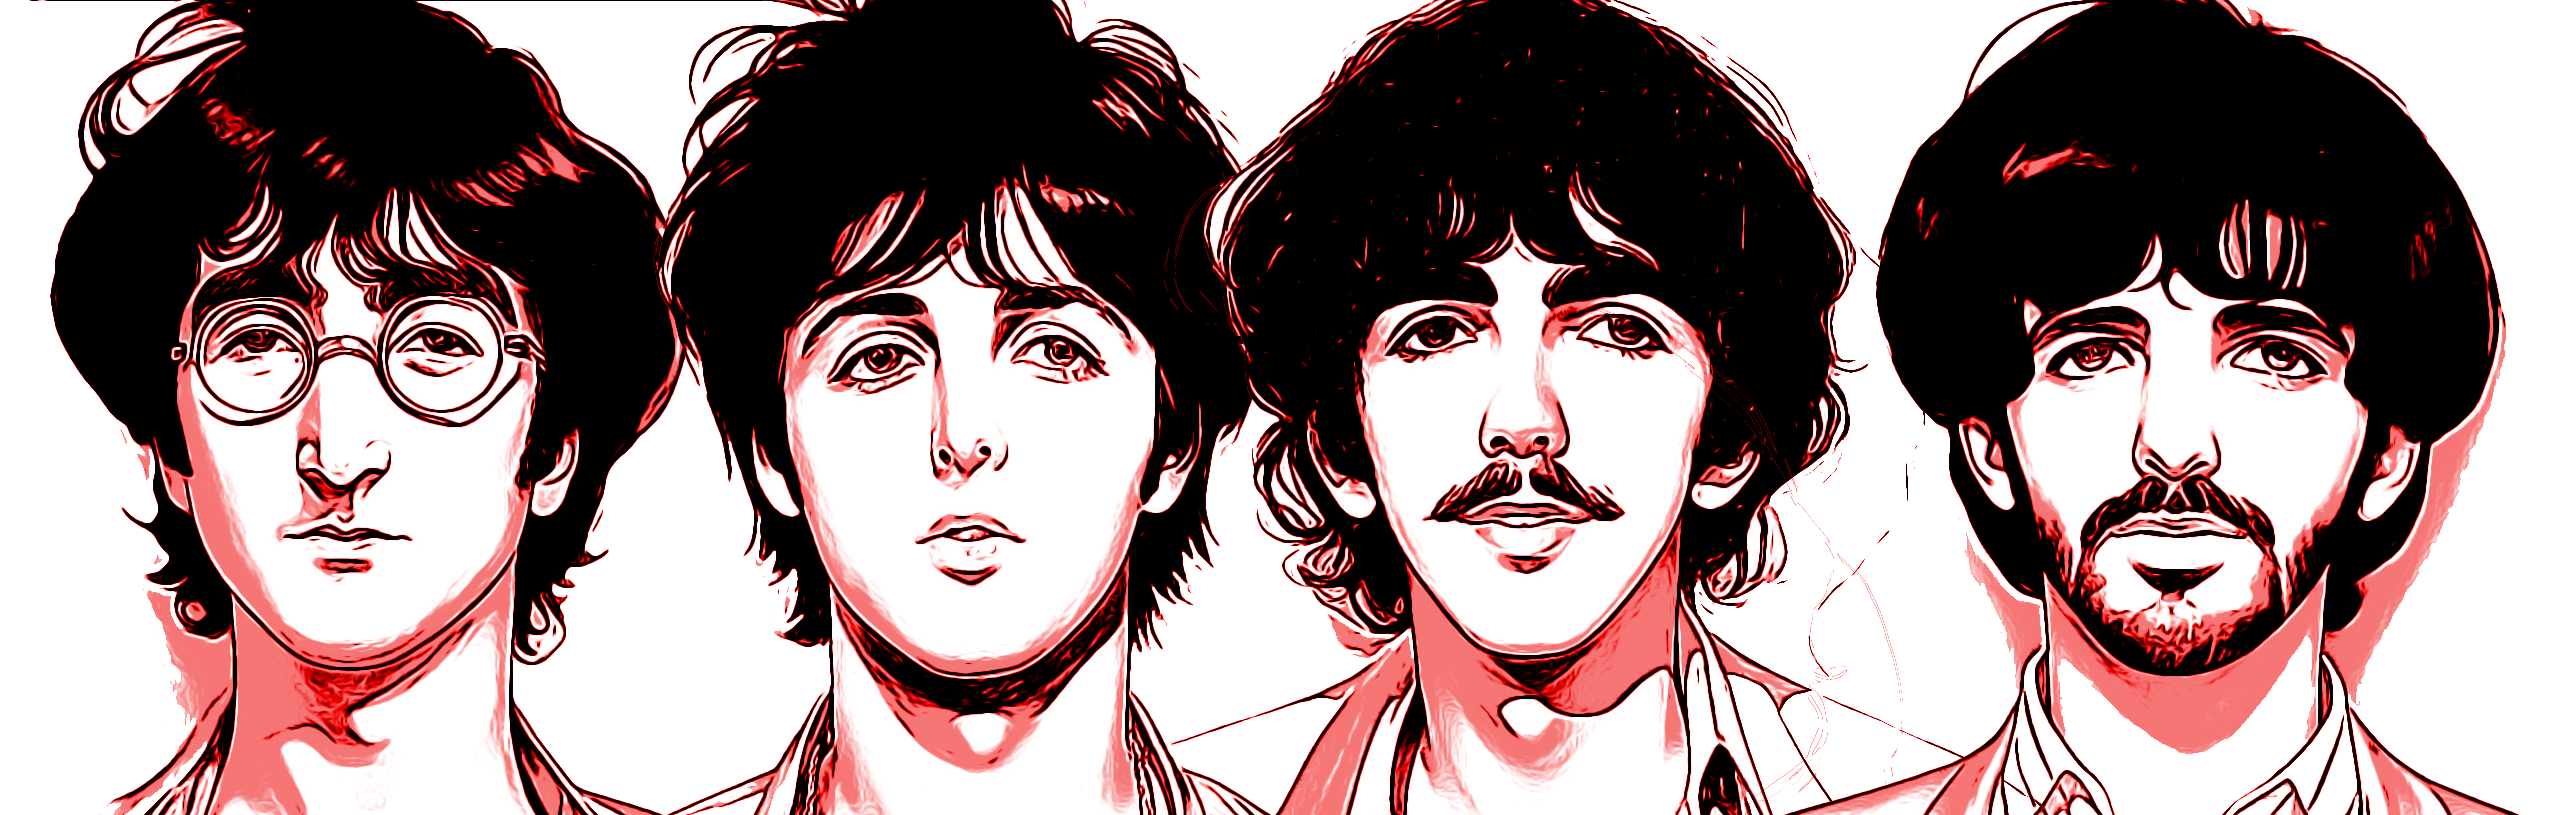 Paul McCartney e Ringo Starr gravam canção de John Lennon